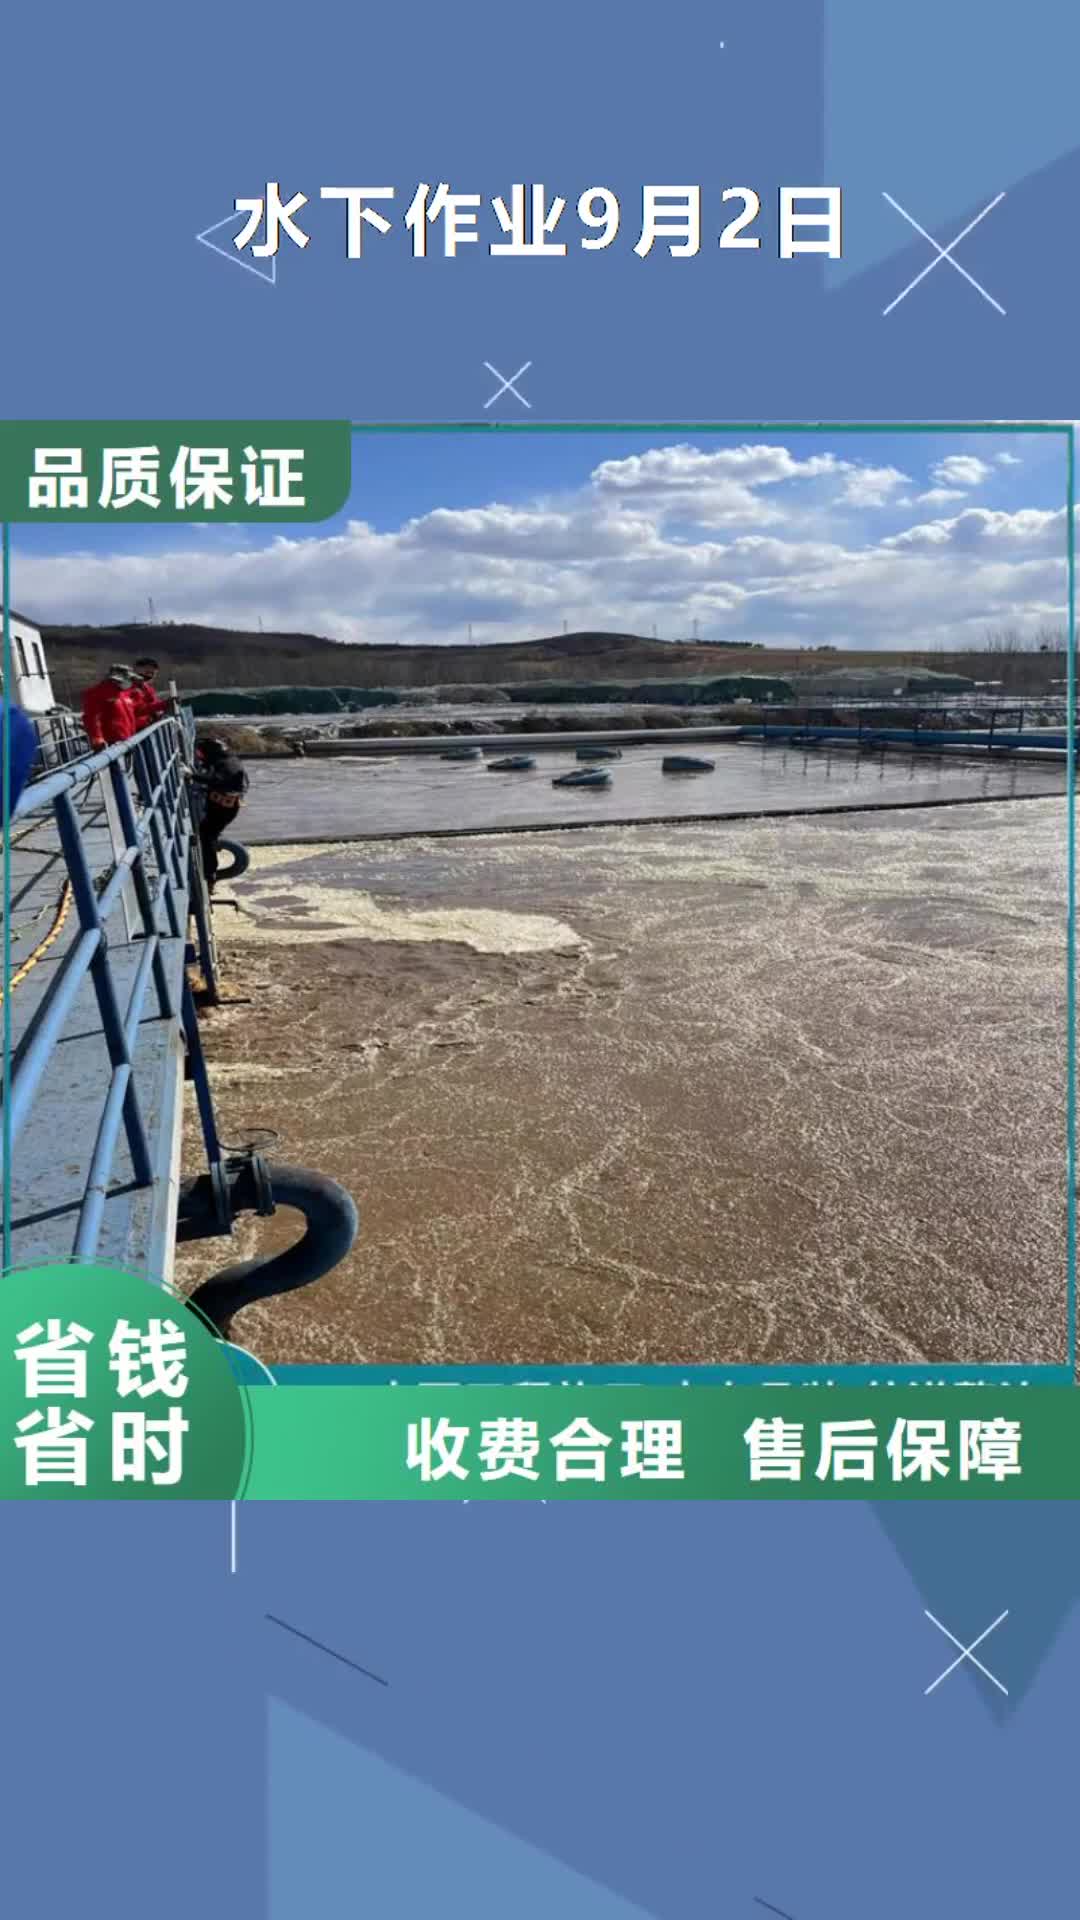 【萍乡 水下作业9月2日-市政管道气囊封堵公司高性价比】